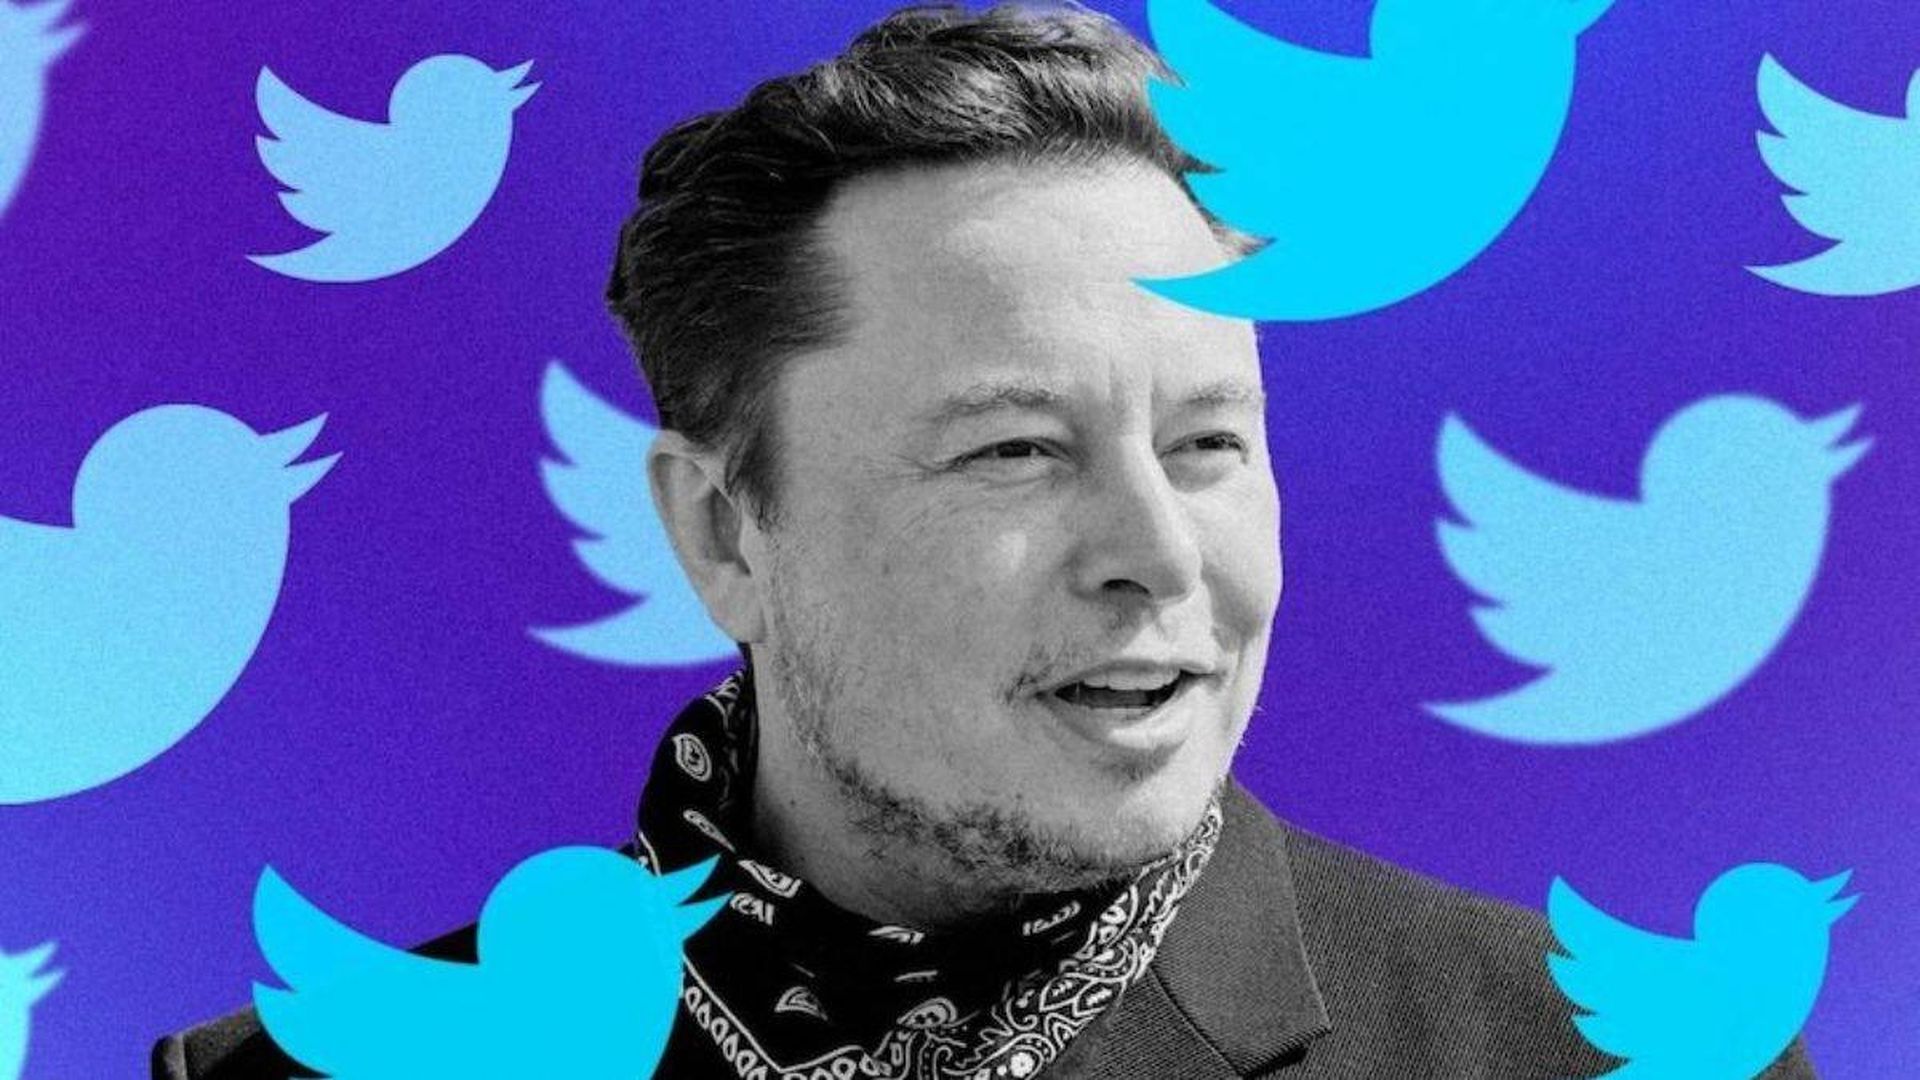 Acordo com Elon Musk no Twitter está suspenso